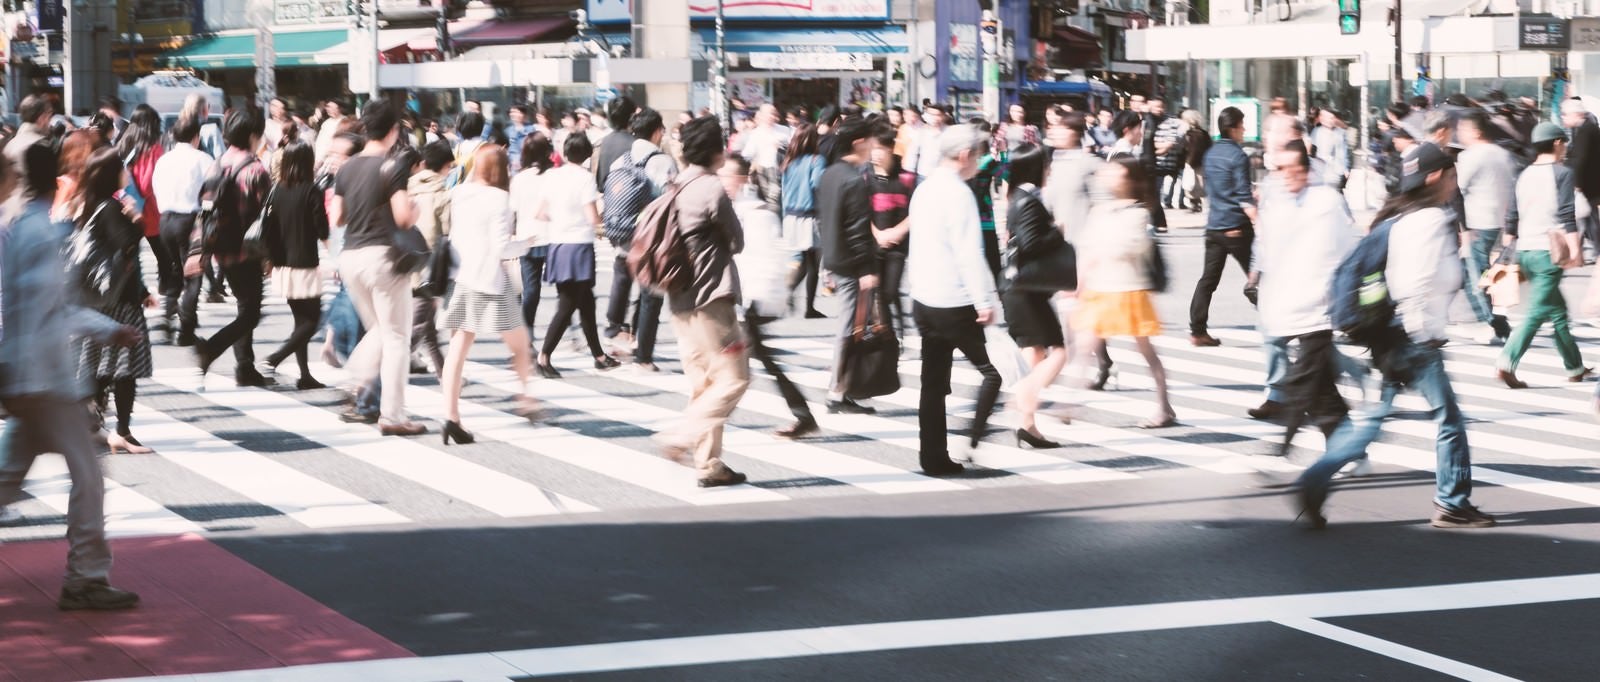 「渋谷の人混み」の写真